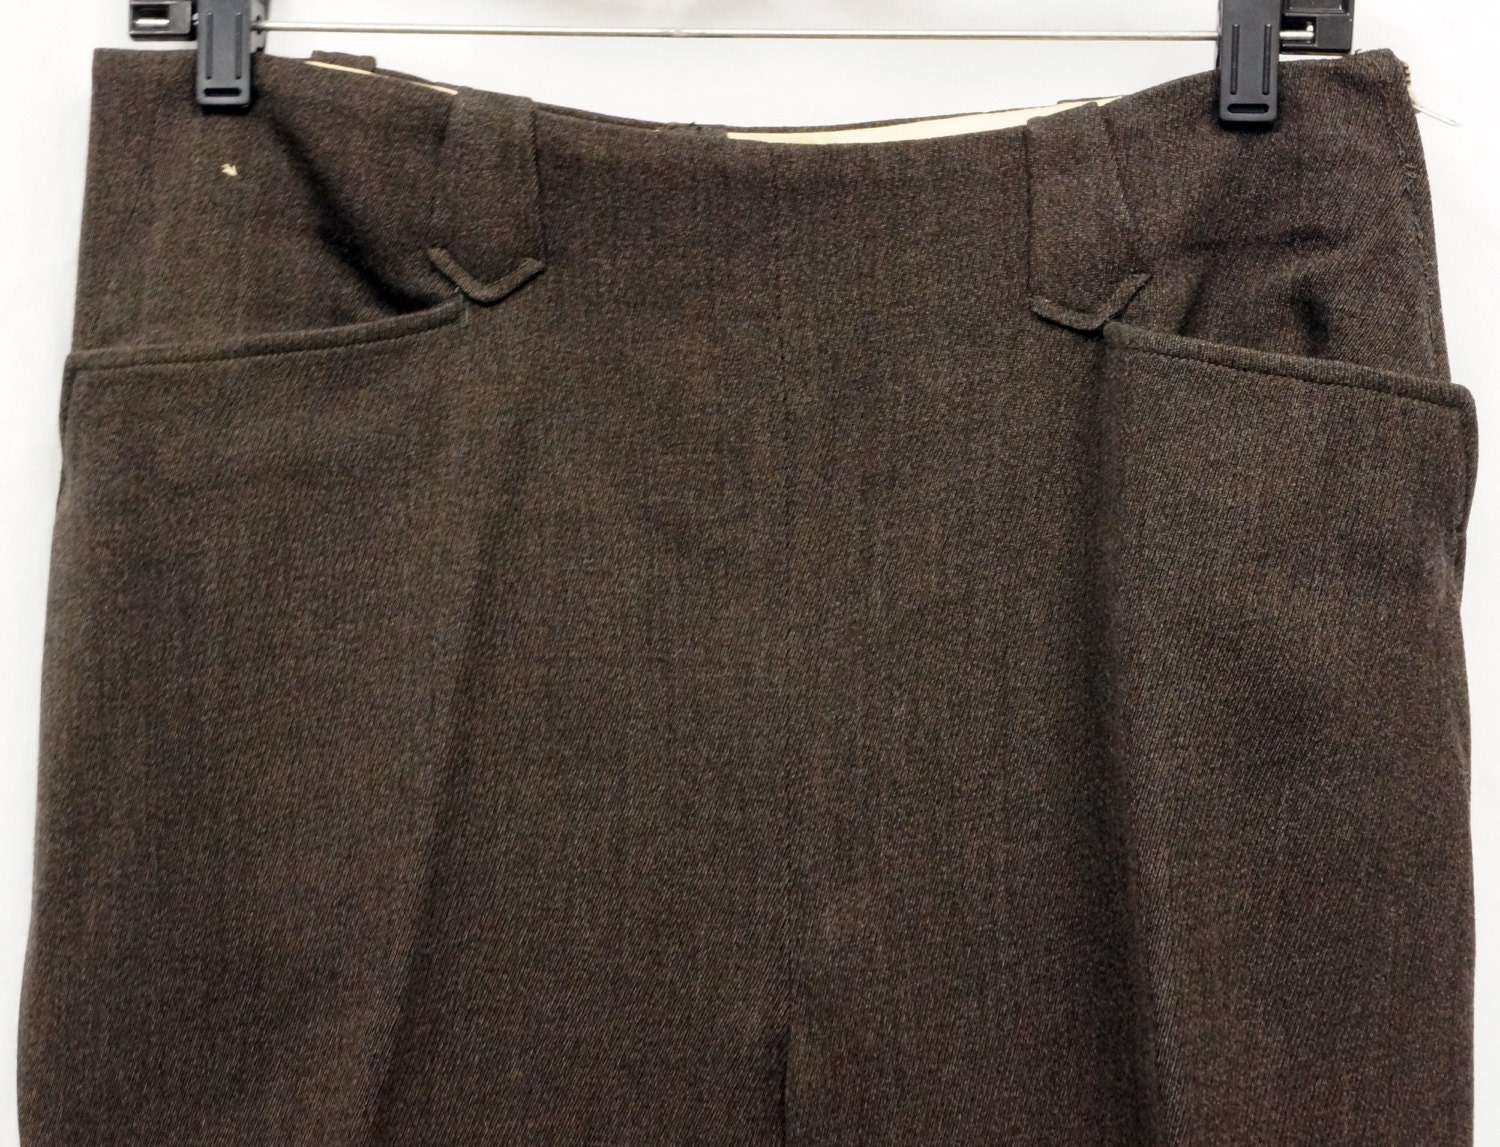 1950s Womens Brown Wool Western Pants 31x33 Vintage Retro